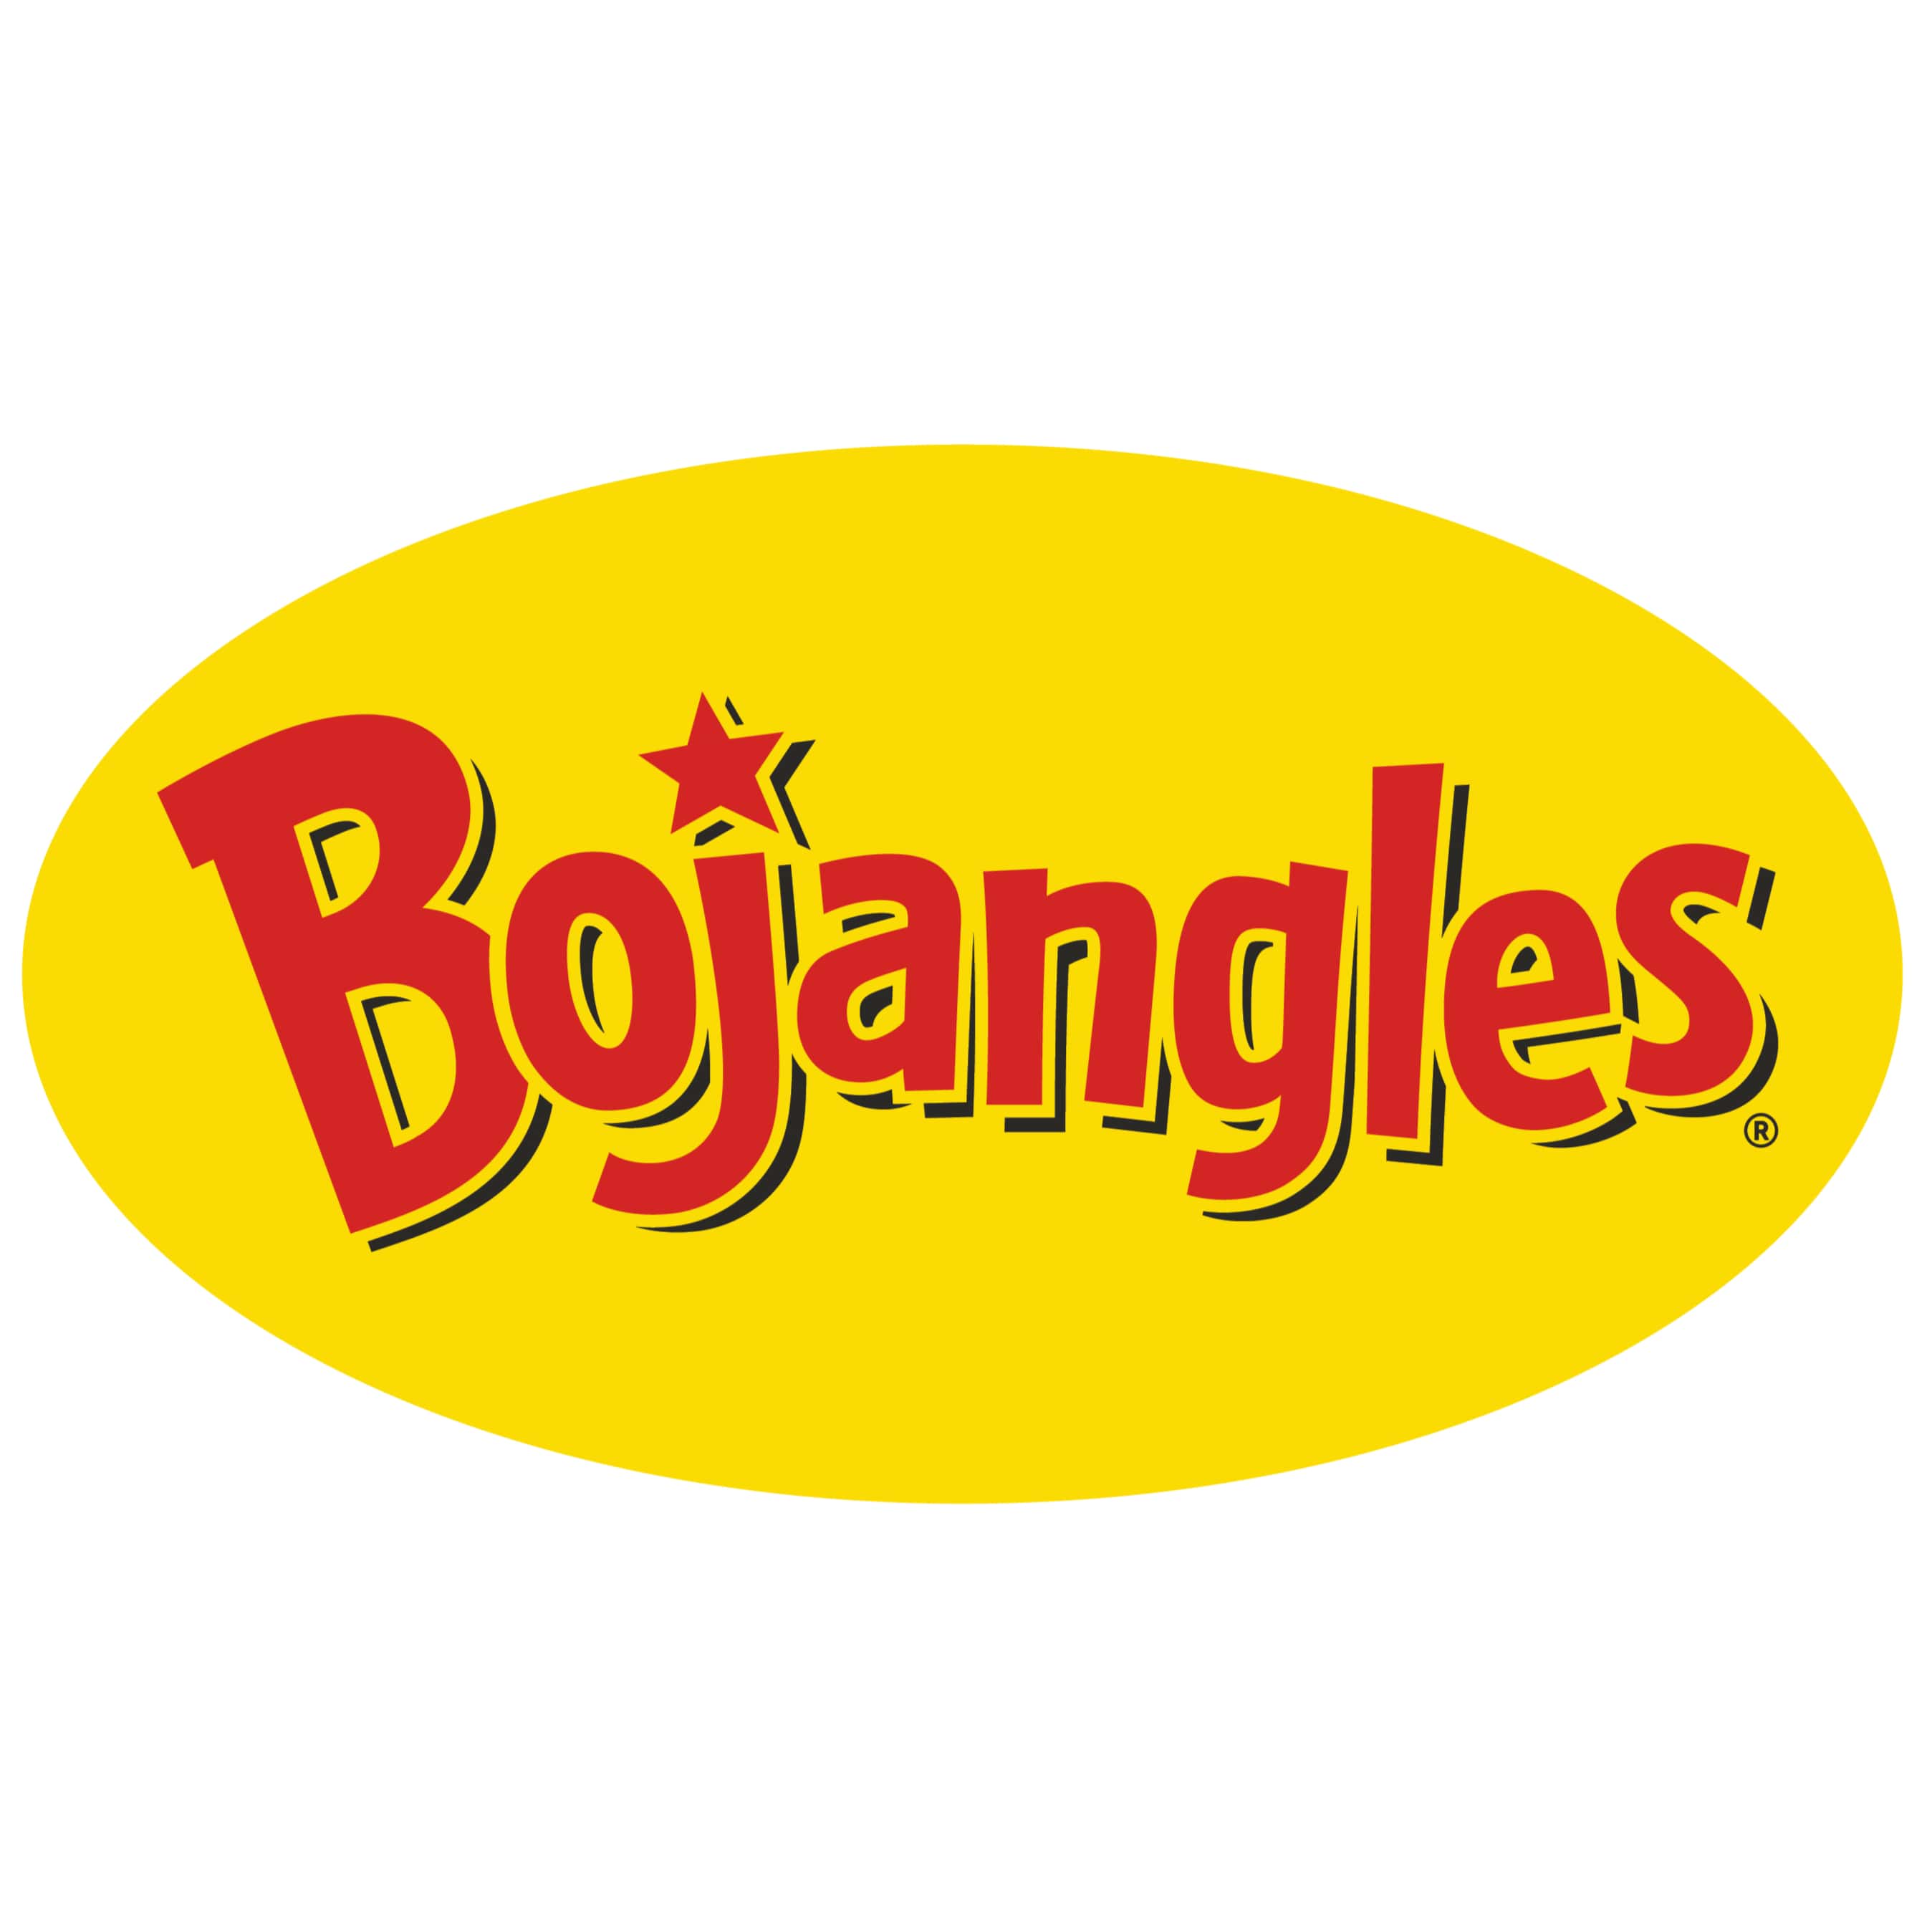 bojangles-logo.jpg